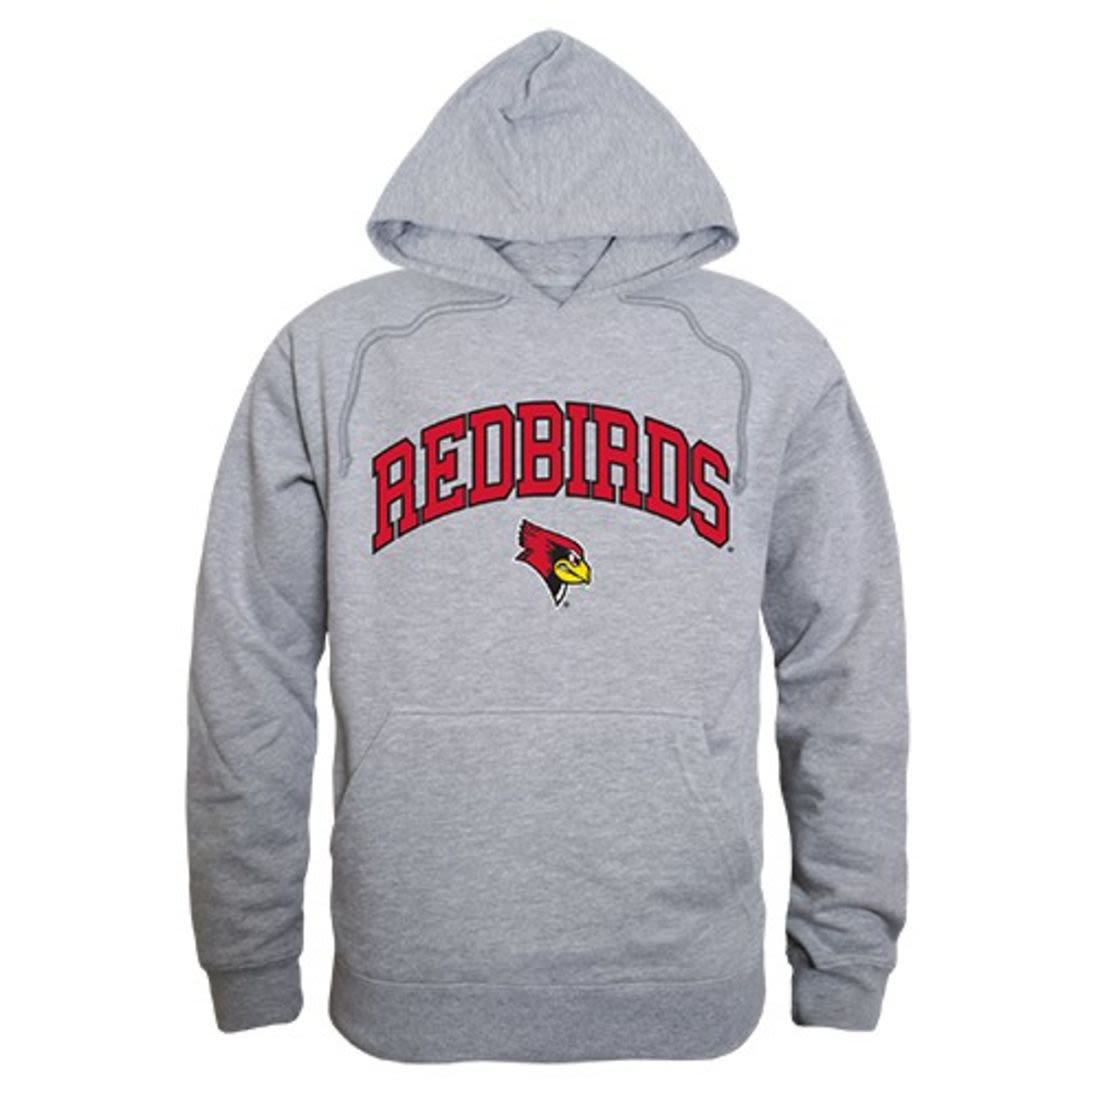 Illinois State University Redbirds Campus Hoodie Sweatshirt Heather Grey-Campus-Wardrobe